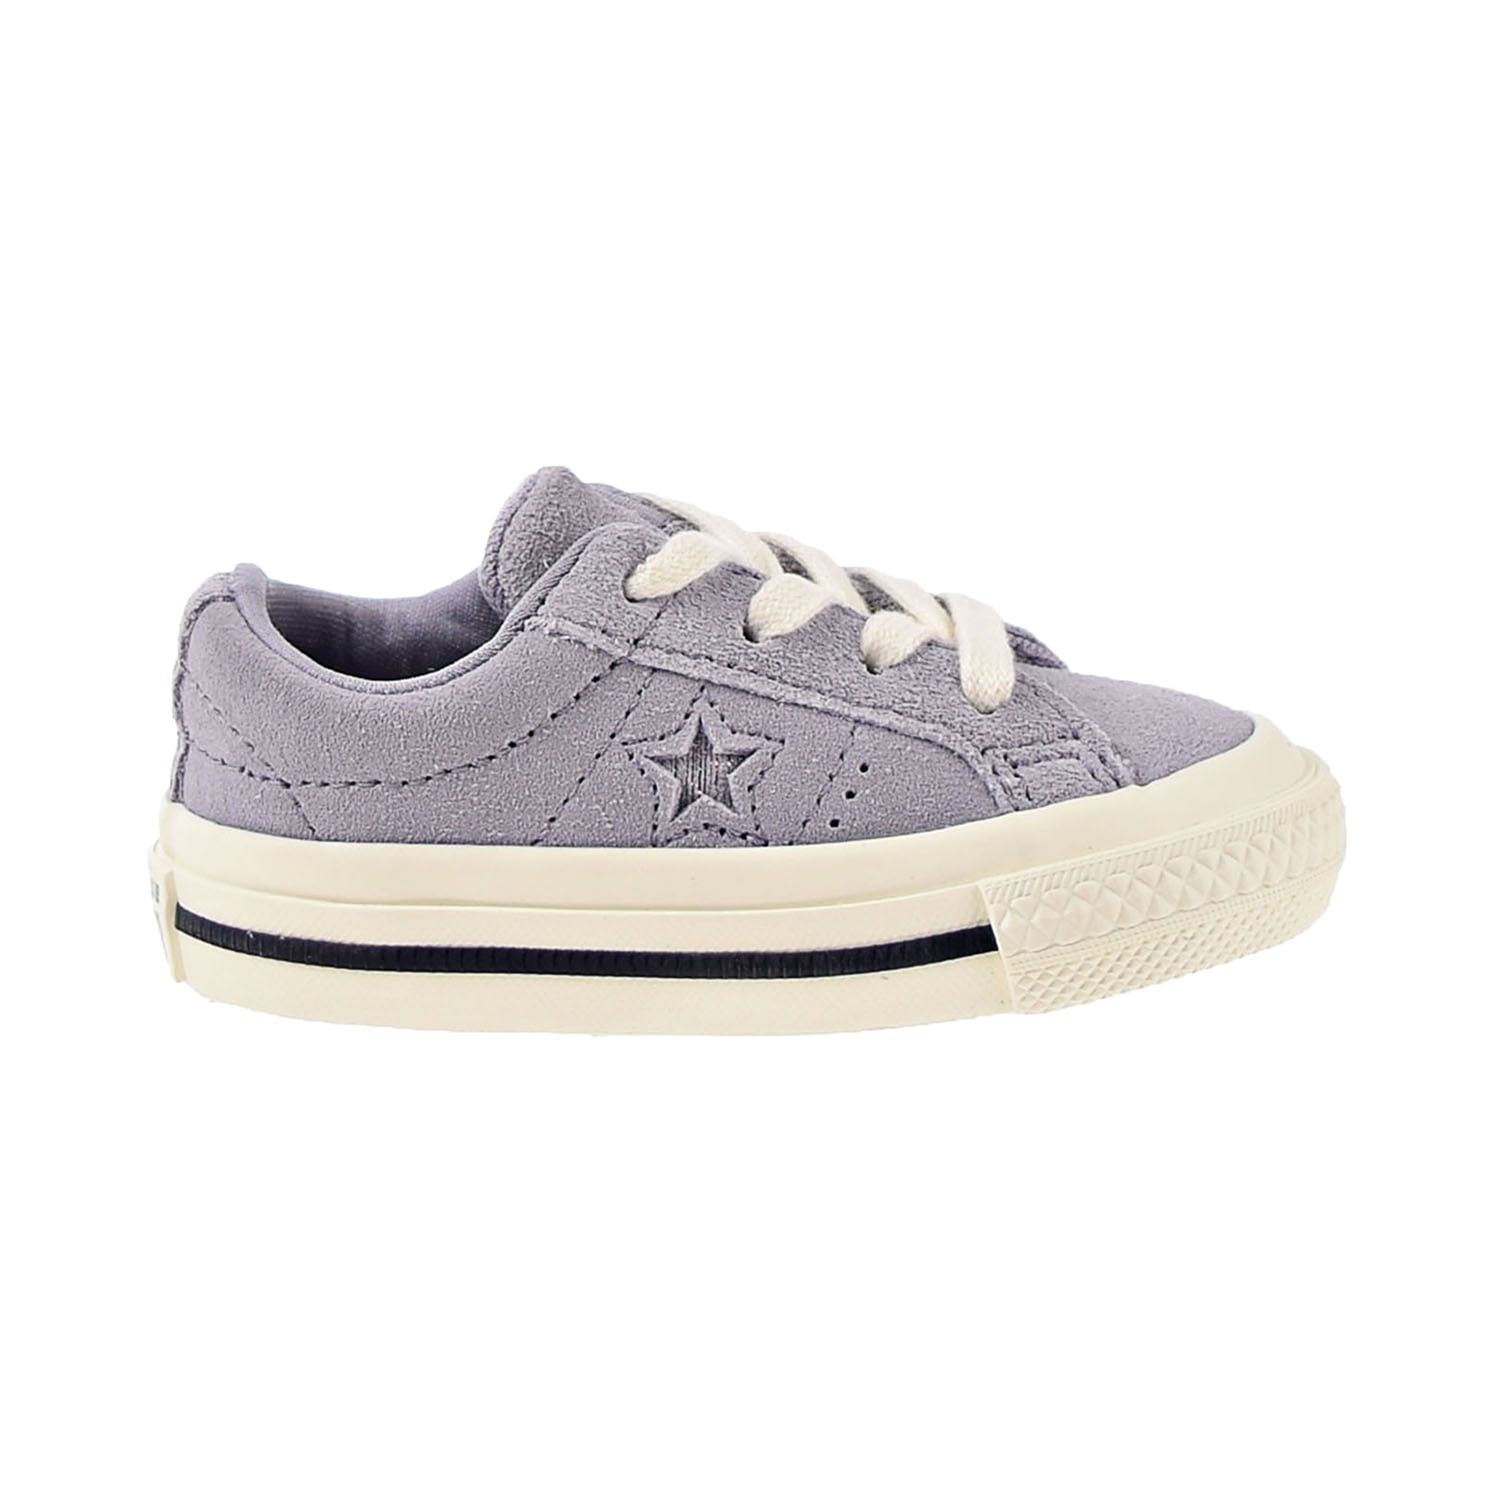 sympati Række ud miljøforkæmper Converse One Star Ox Toddler Shoes Provence Purple-Silver-Egret 762013c -  Walmart.com